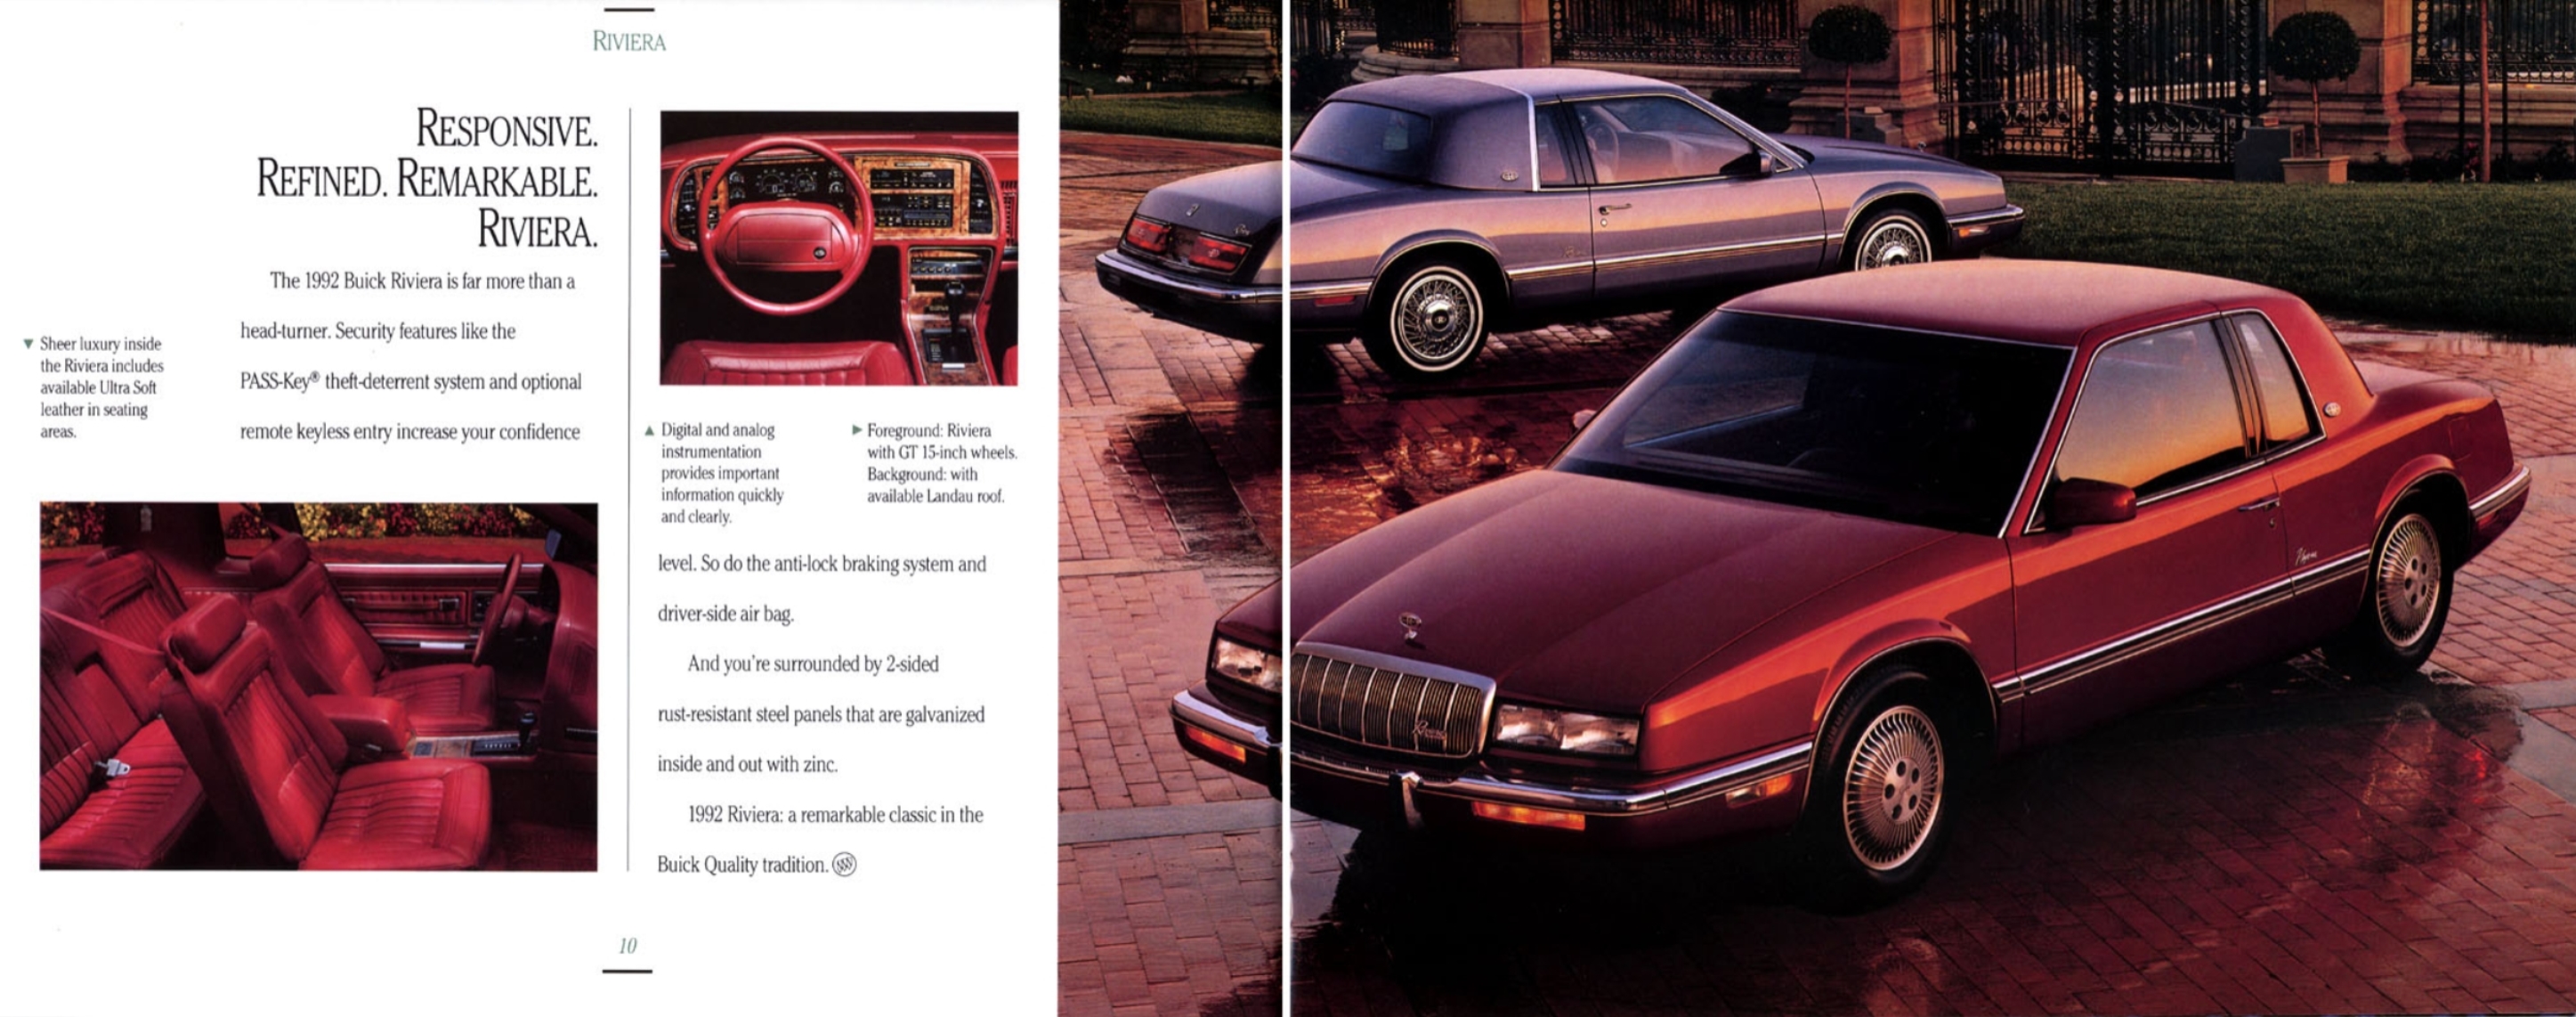 1992 Buick Full Line-10-11